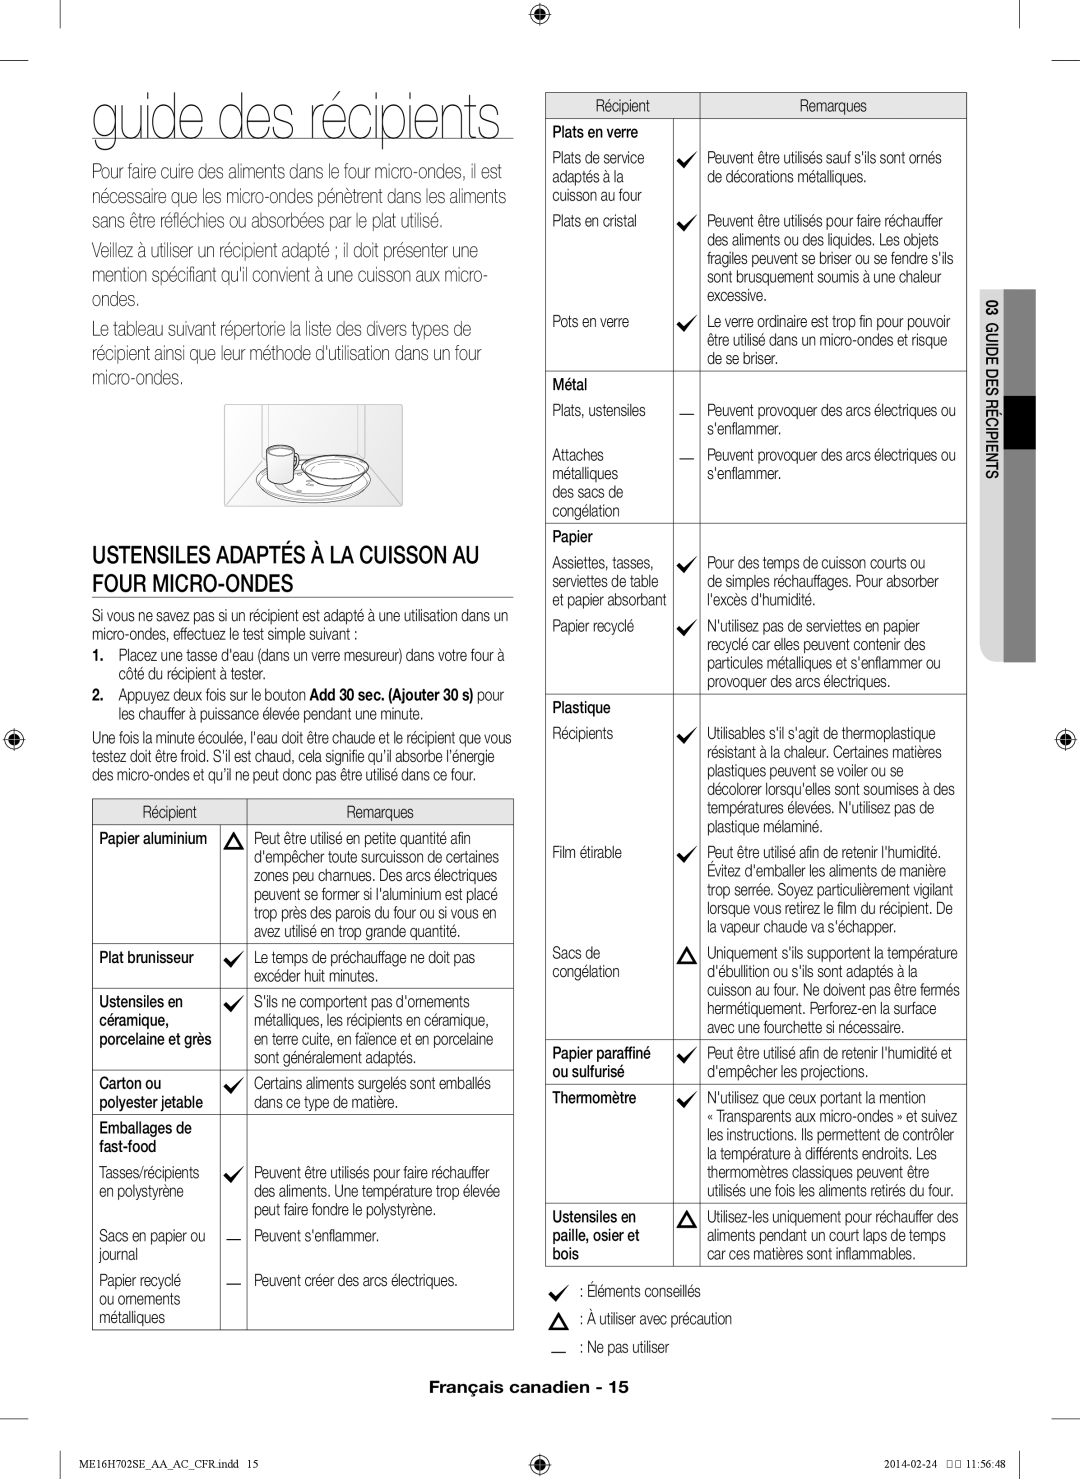 Samsung ME16H702SE user manual guide des récipients, Français canadien 